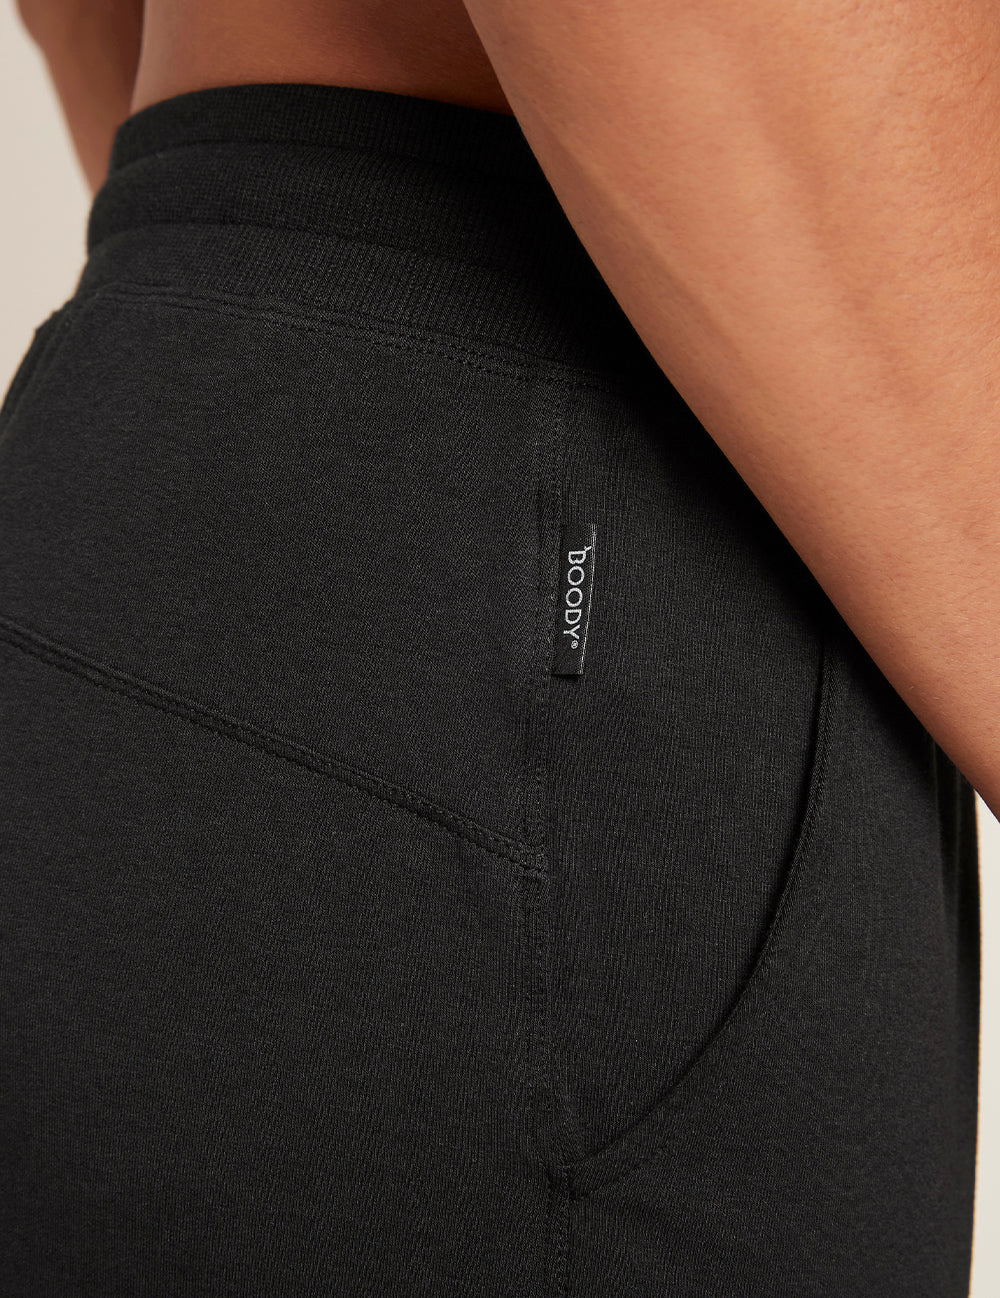 Men_s-Weekend-sweatpants-Black-Detail.jpg